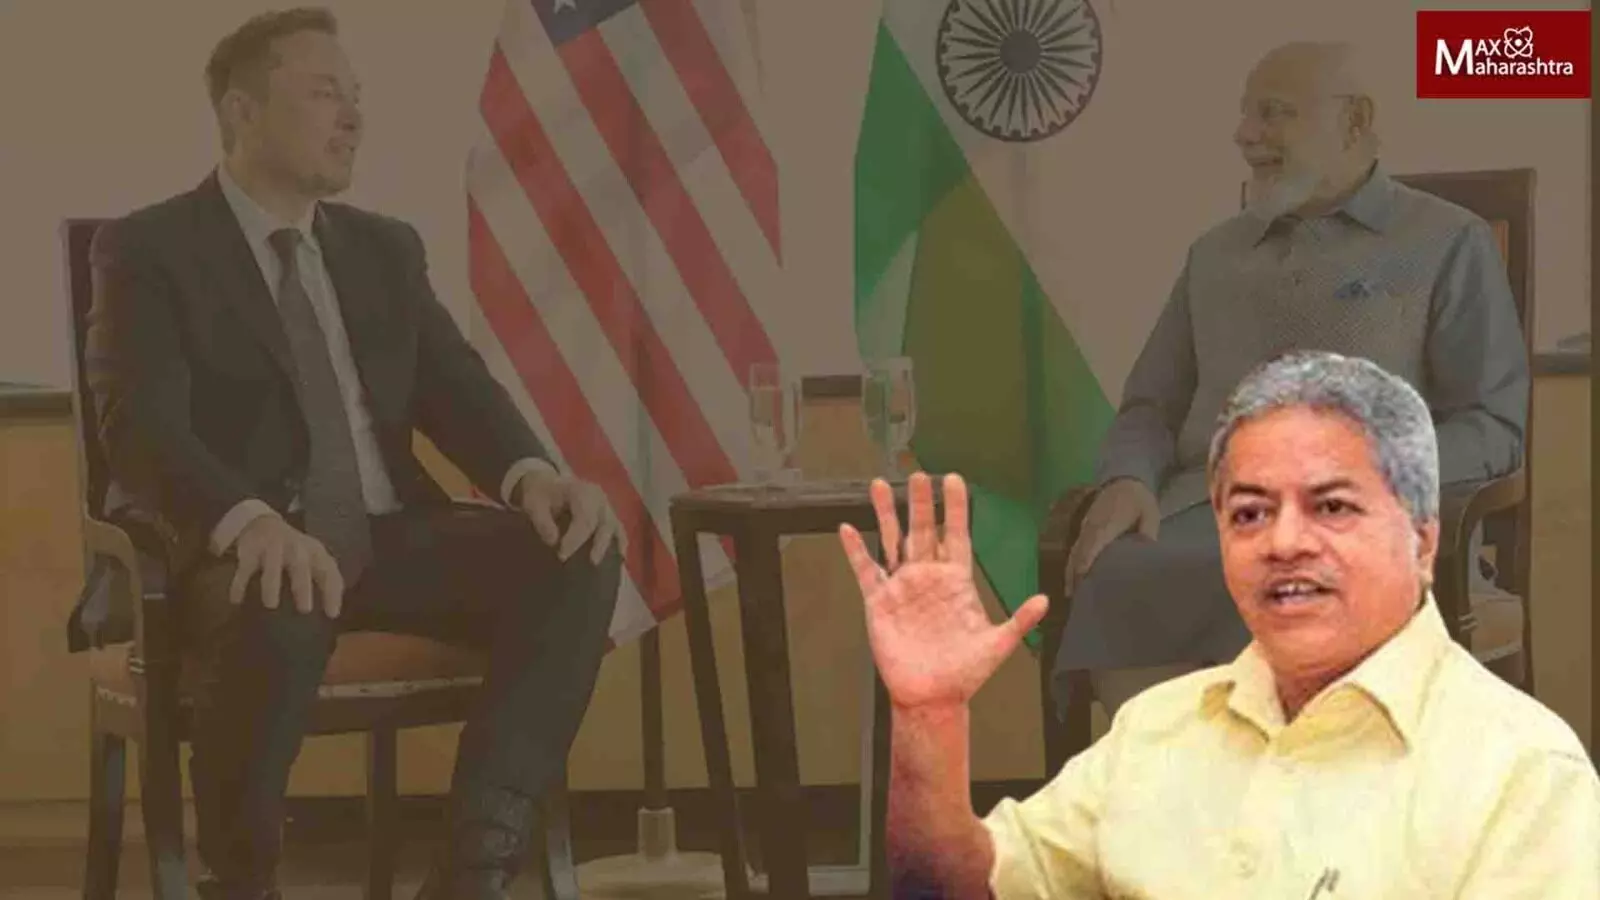 सत्ताबदलाच्या अंदाजामुळेच टेस्लाप्रमुख एलन मस्कचा भारत दौरा रद्द - अनंत गाडगीळ